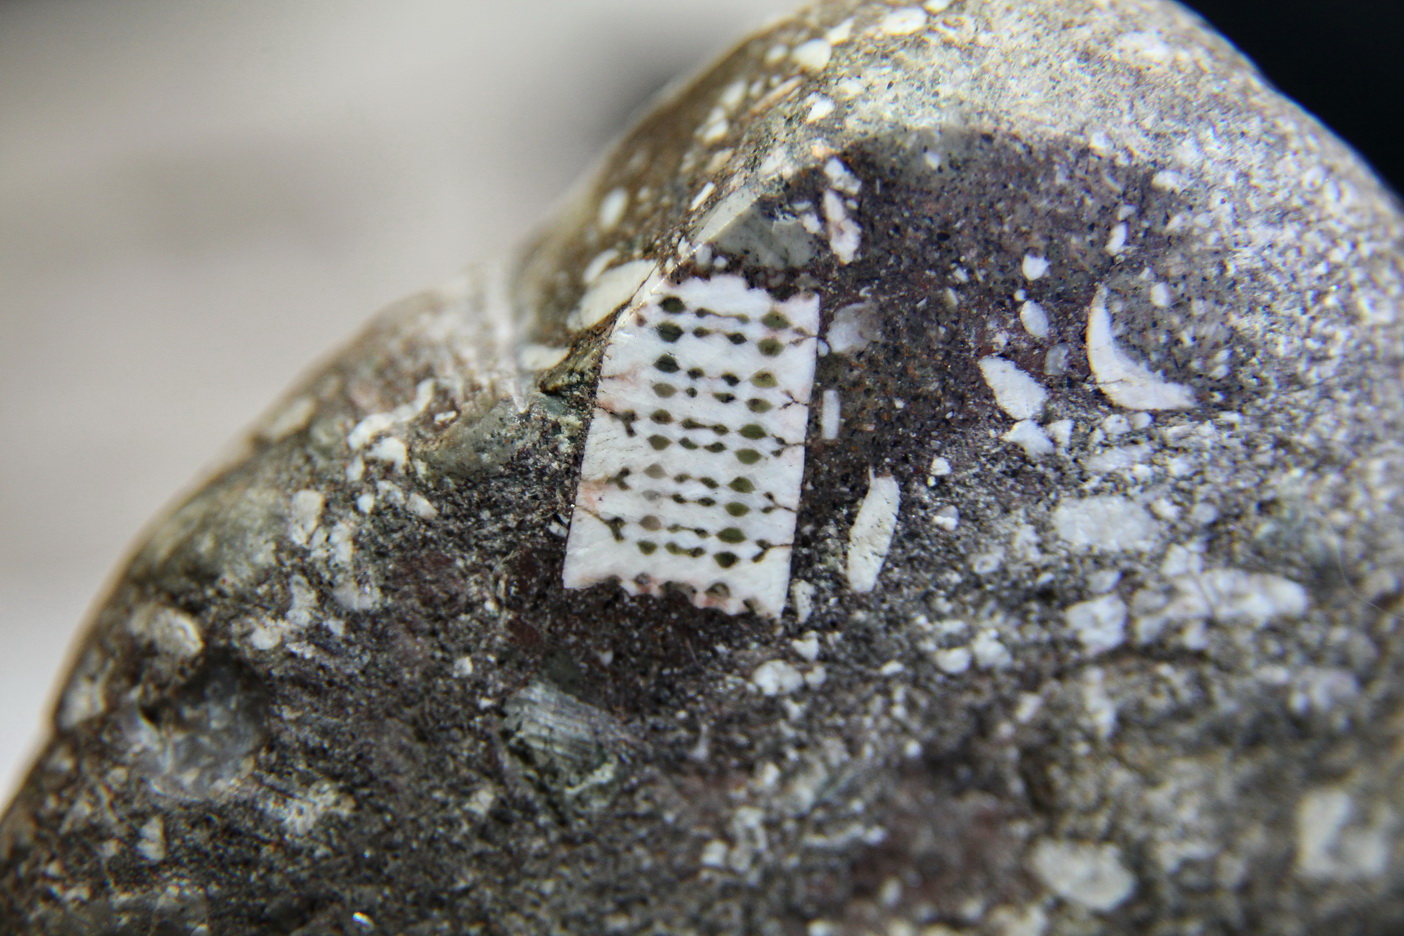 "Микрочип" возрастом 400 млн лет могут показать широкой публике